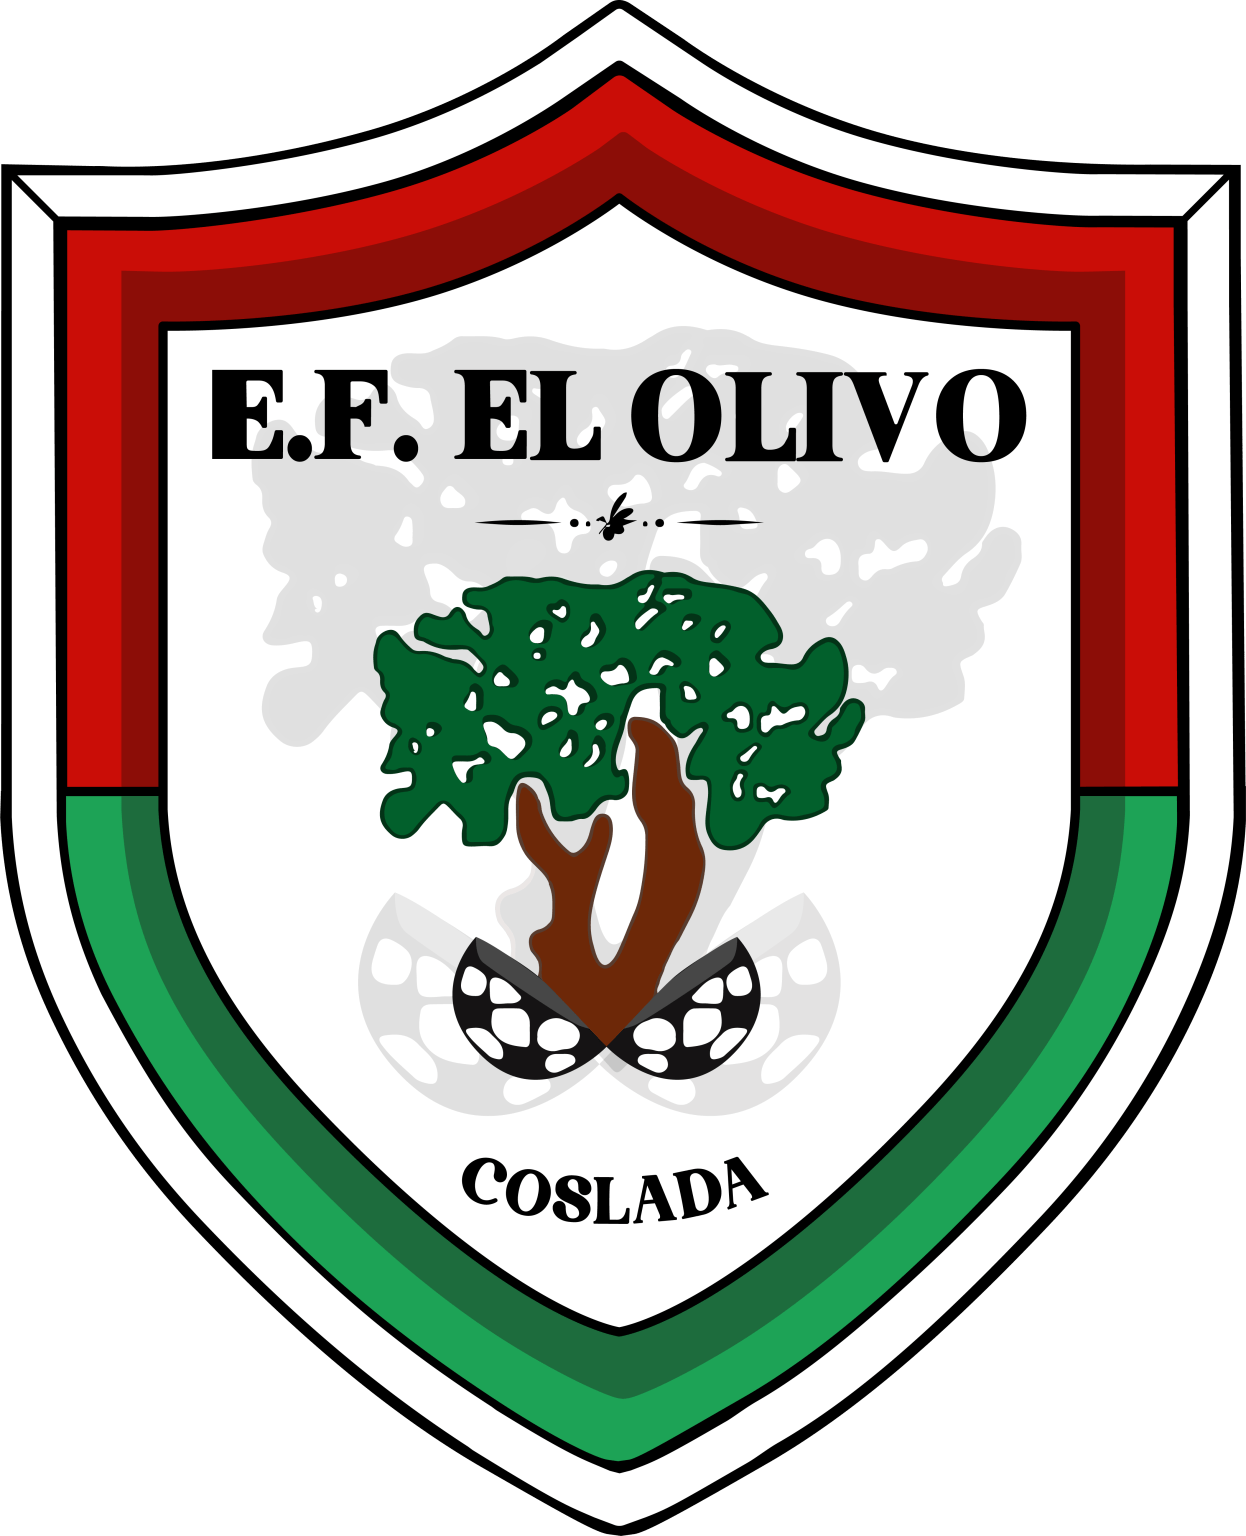 Escudo-e.f.-olivo-coslada-21-22-png-1-1246x1536